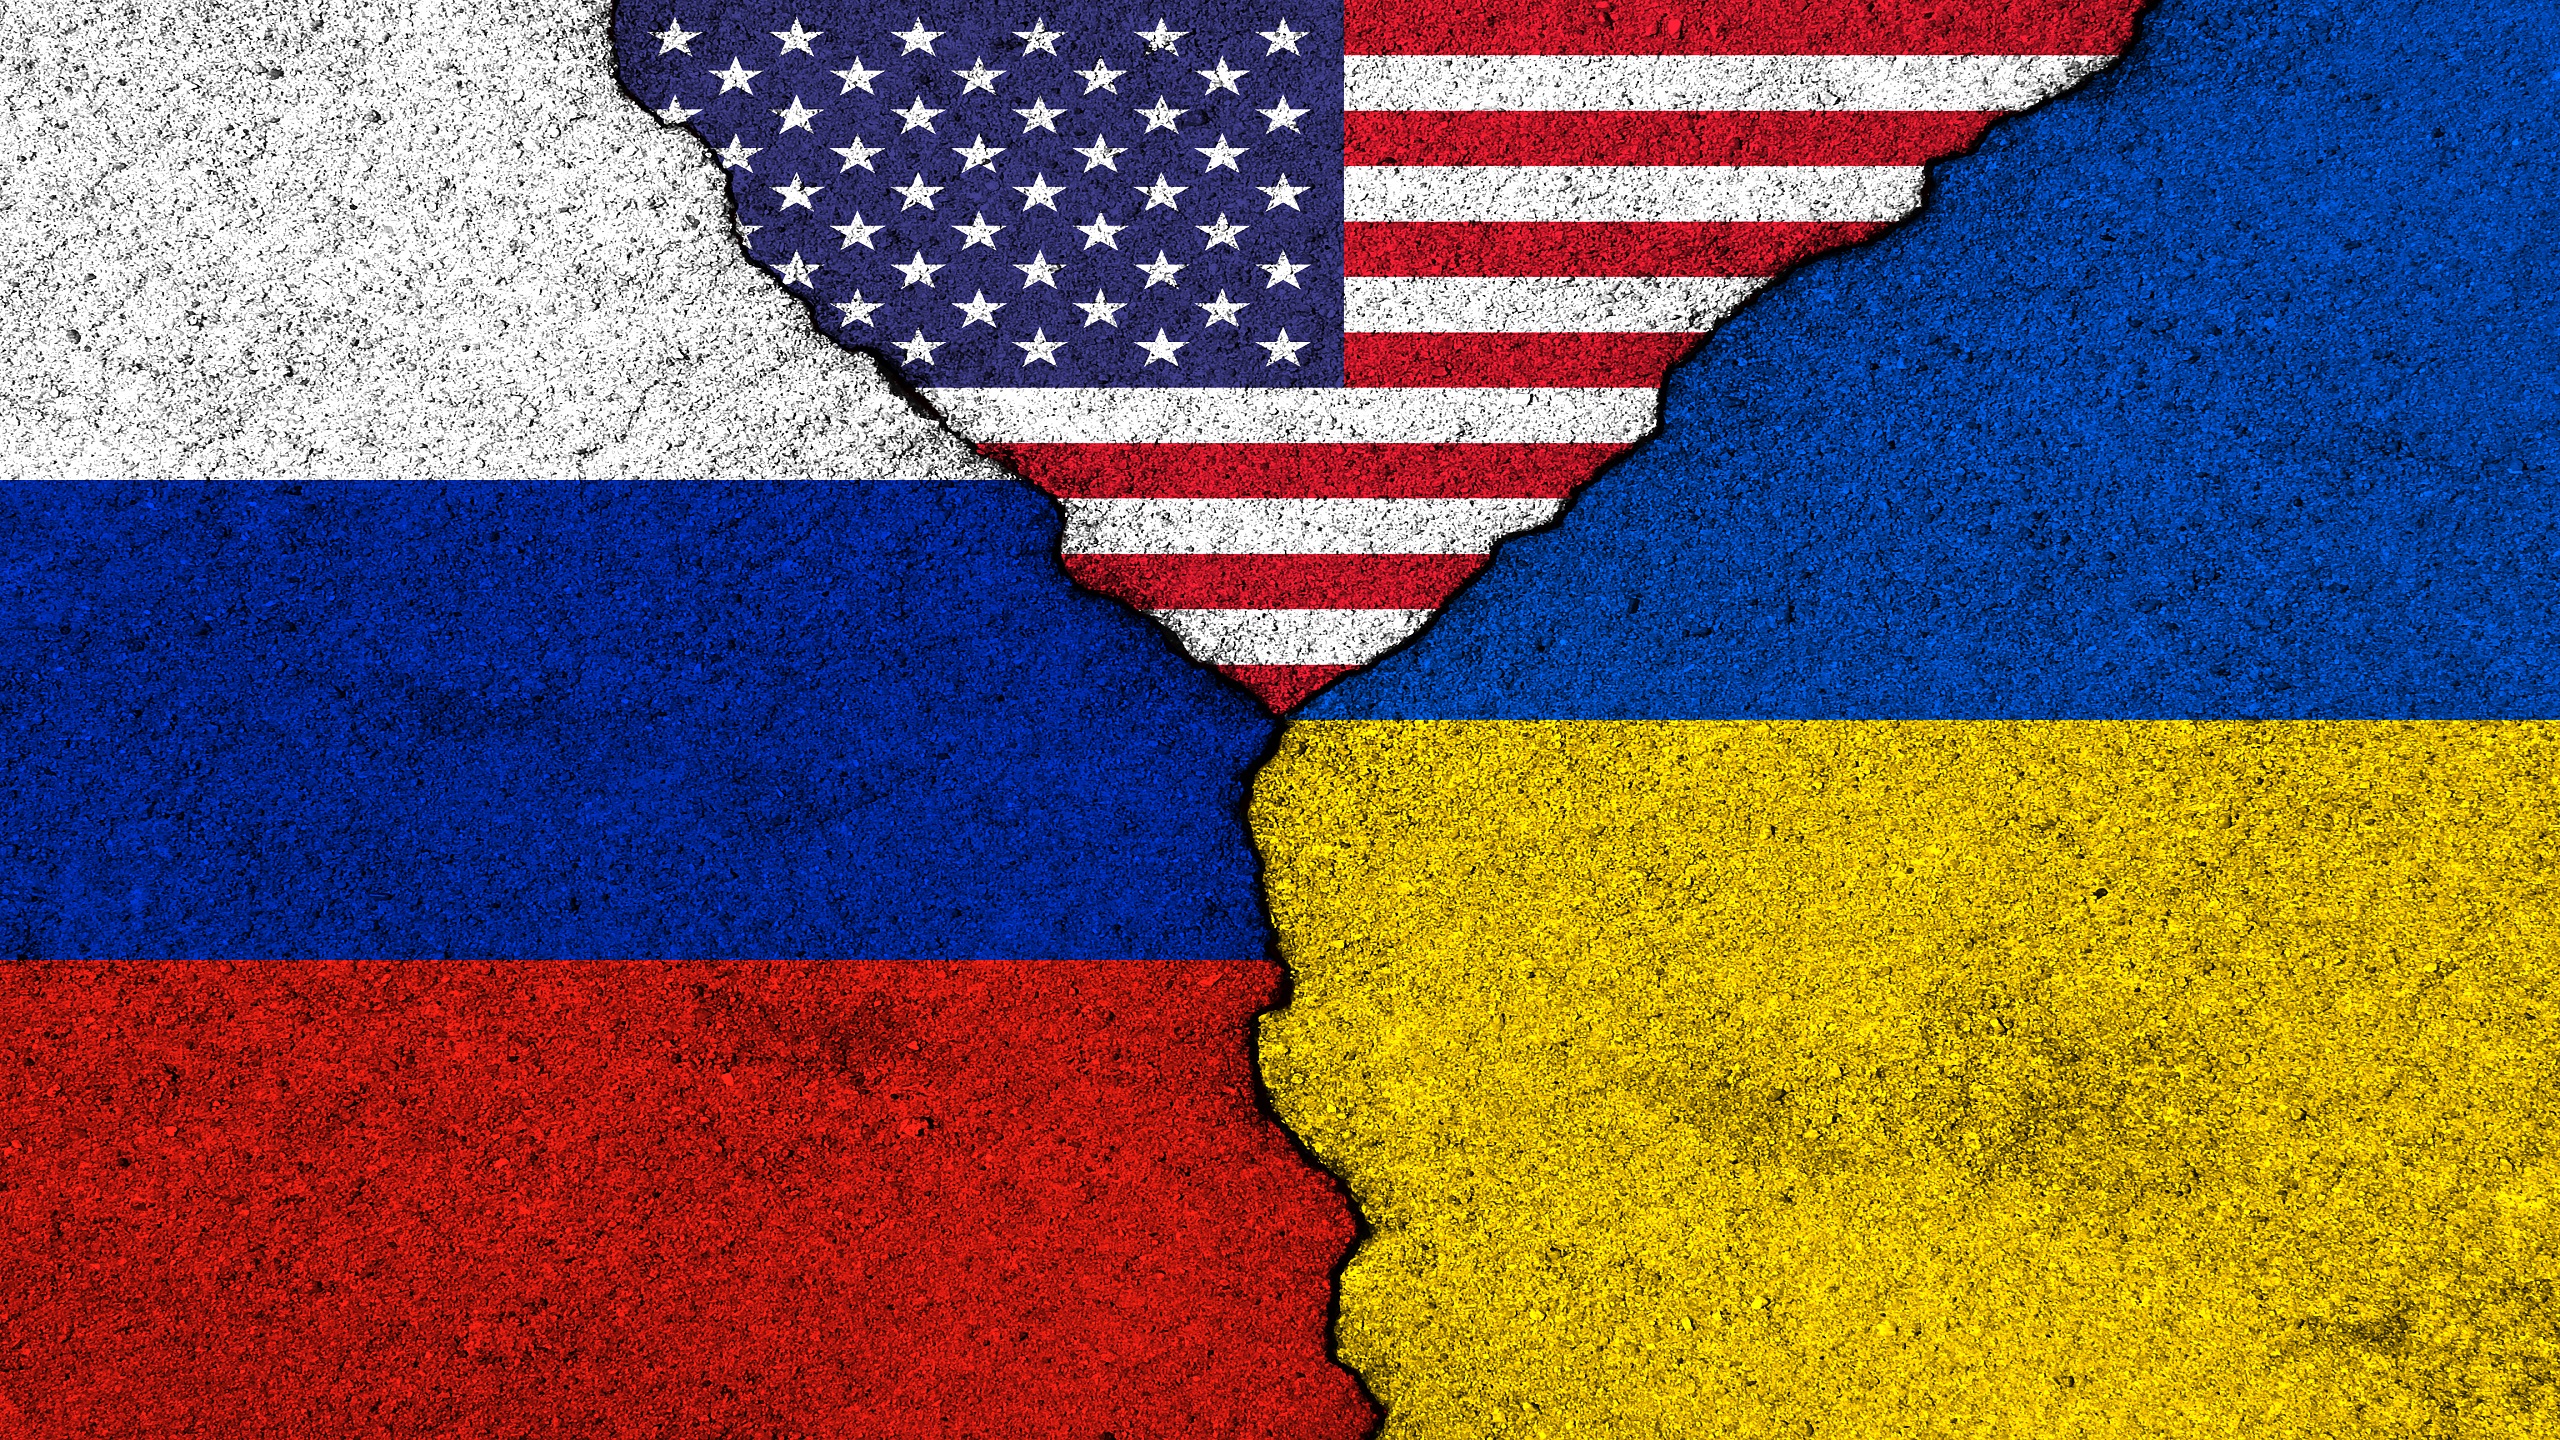 Mosca: potrebbero finire le relazioni diplomatiche con gli Stati Uniti